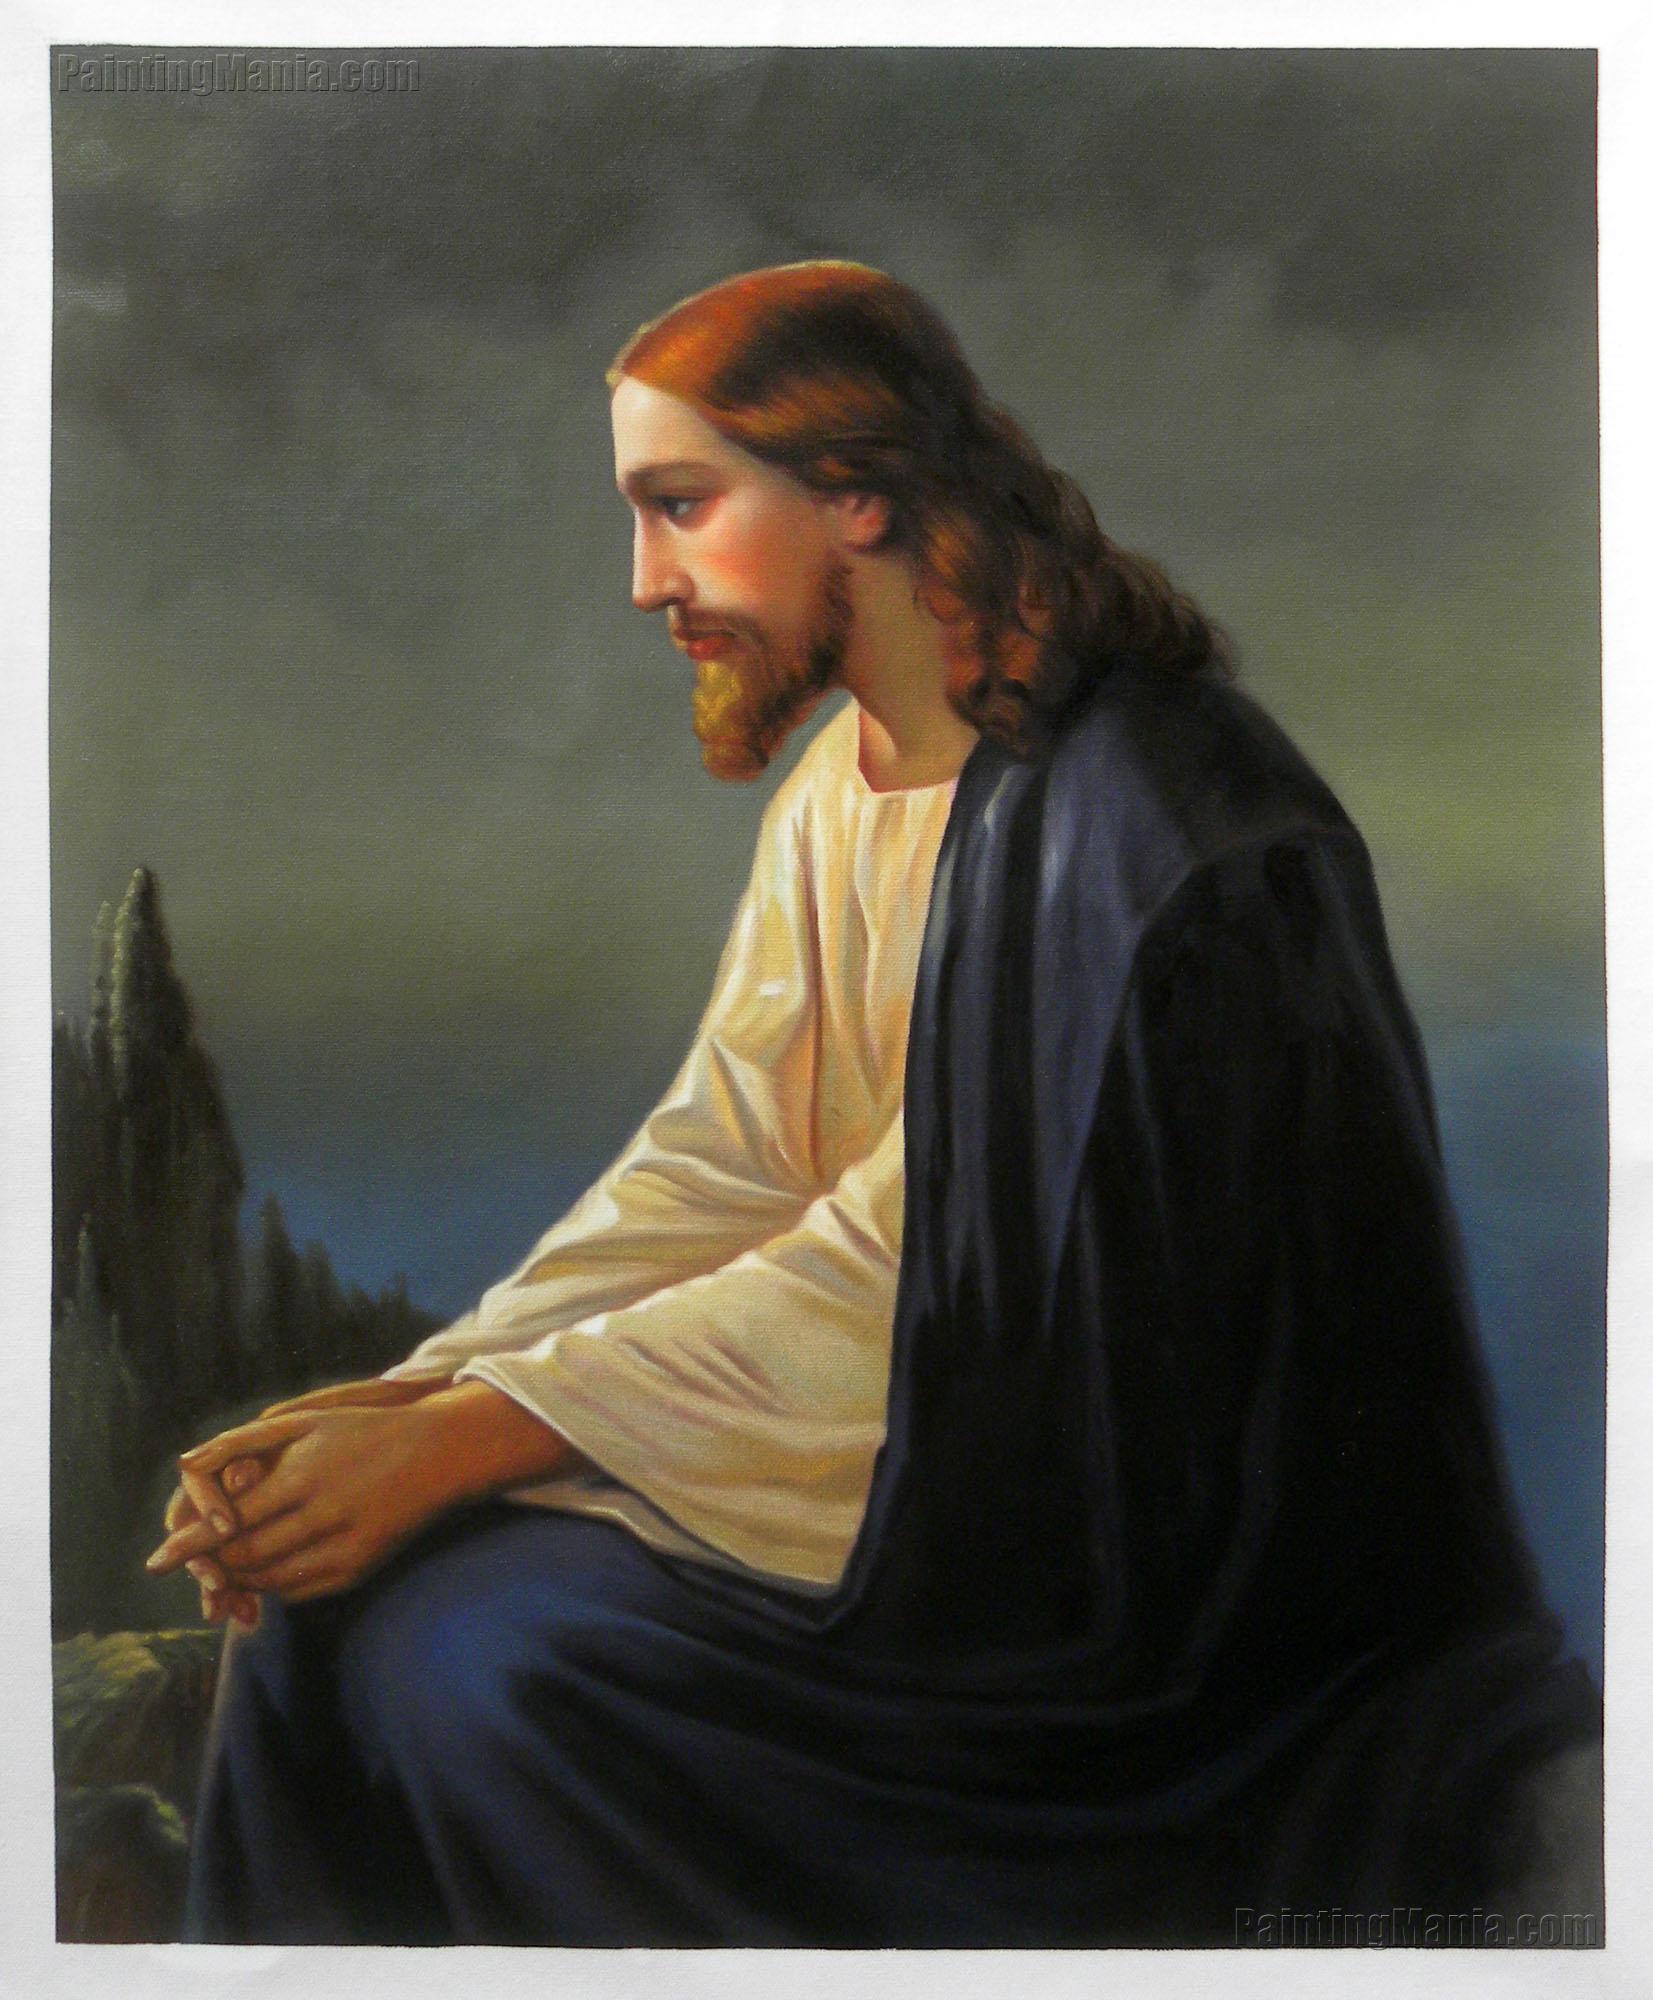 Jesus Christ Portrait Painting